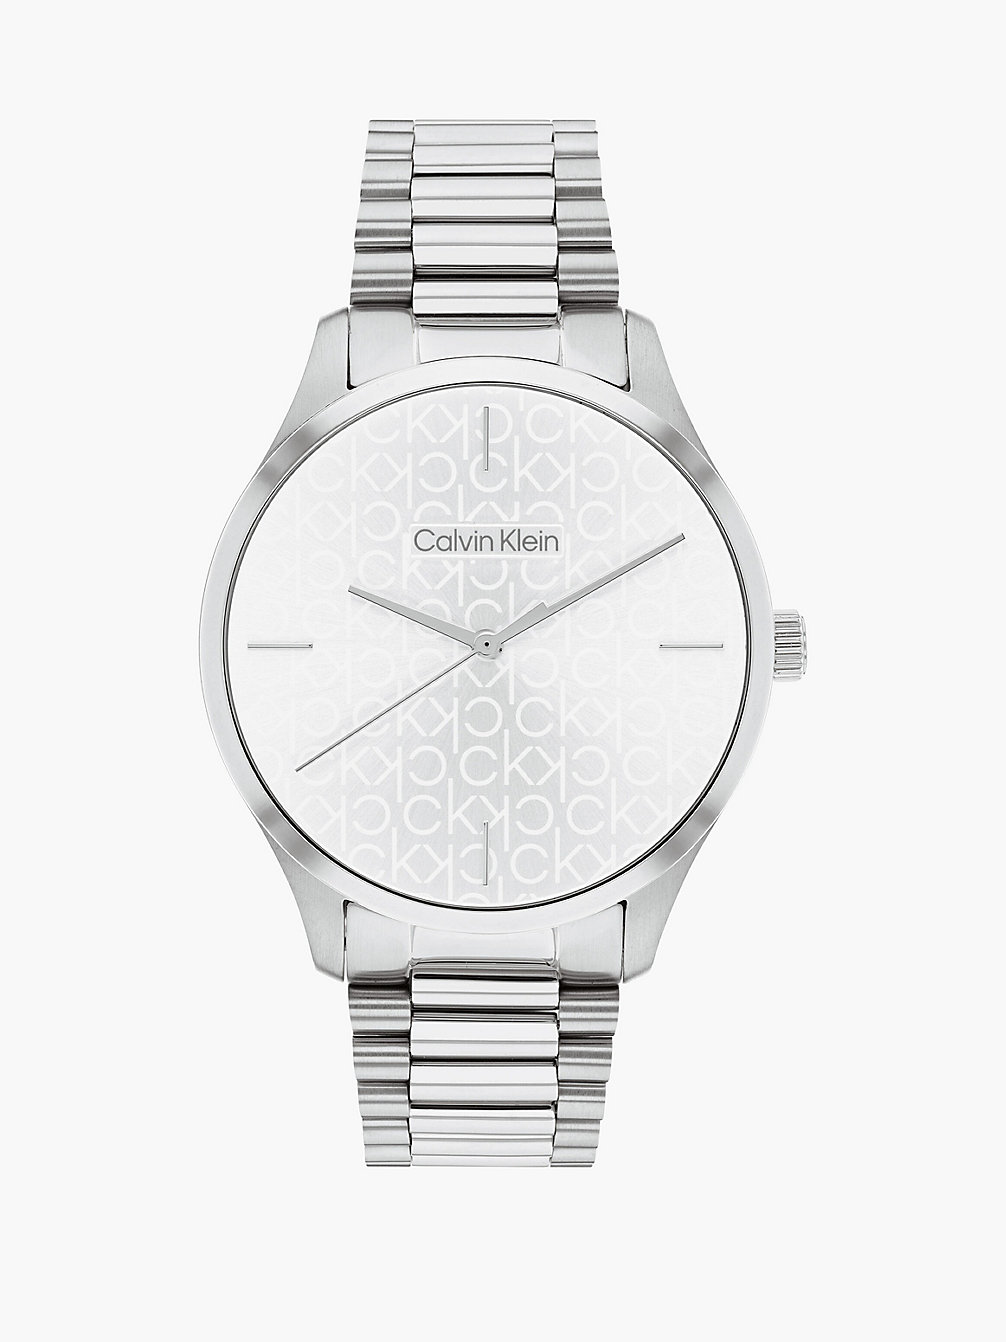 SILVER Watch - Iconic undefined unisex Calvin Klein